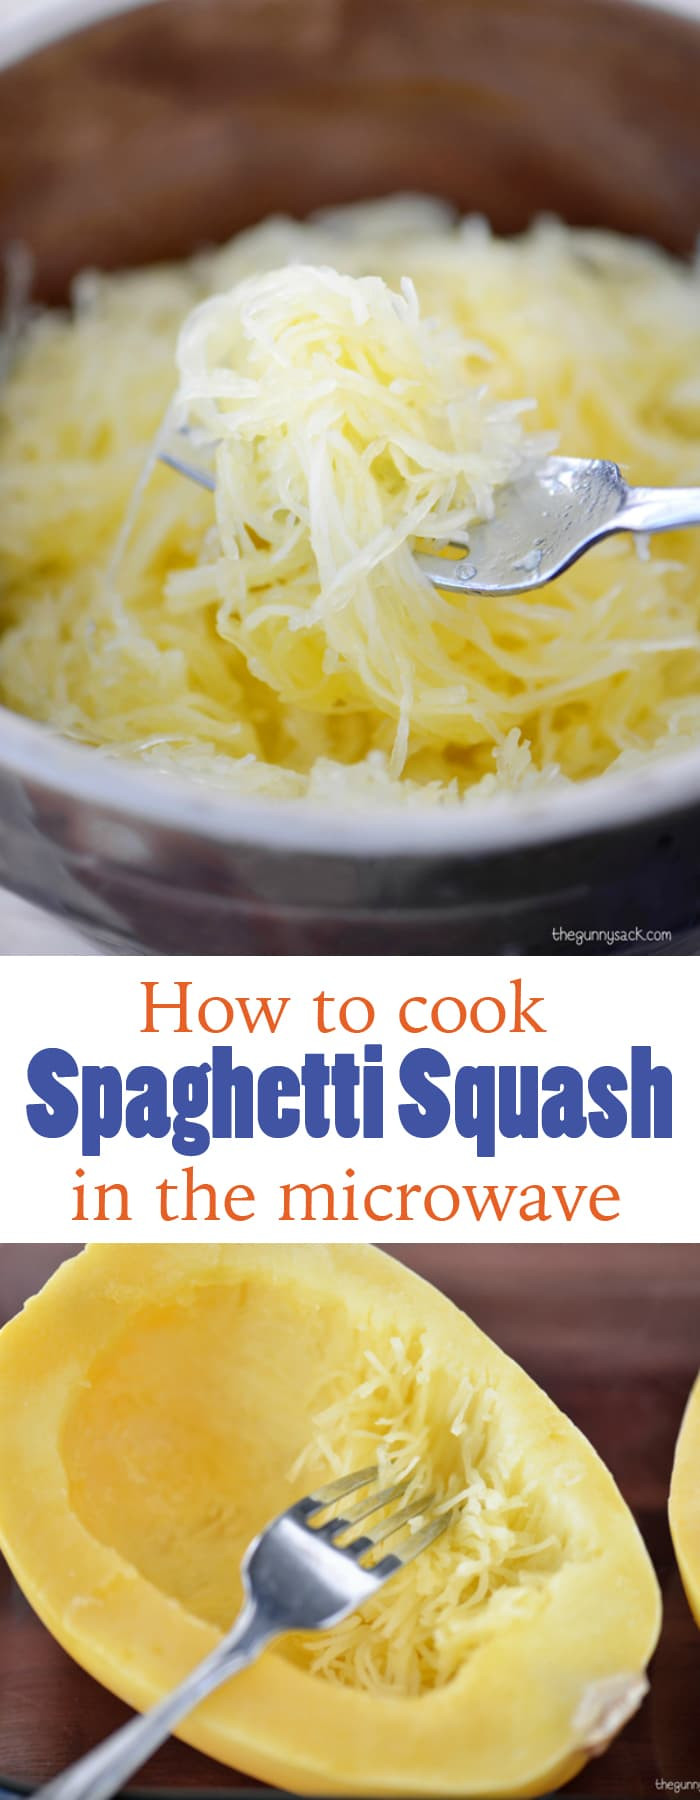 Spaghetti Squash Microwave Recipes
 Recipe For Spaghetti Squash With Meatballs